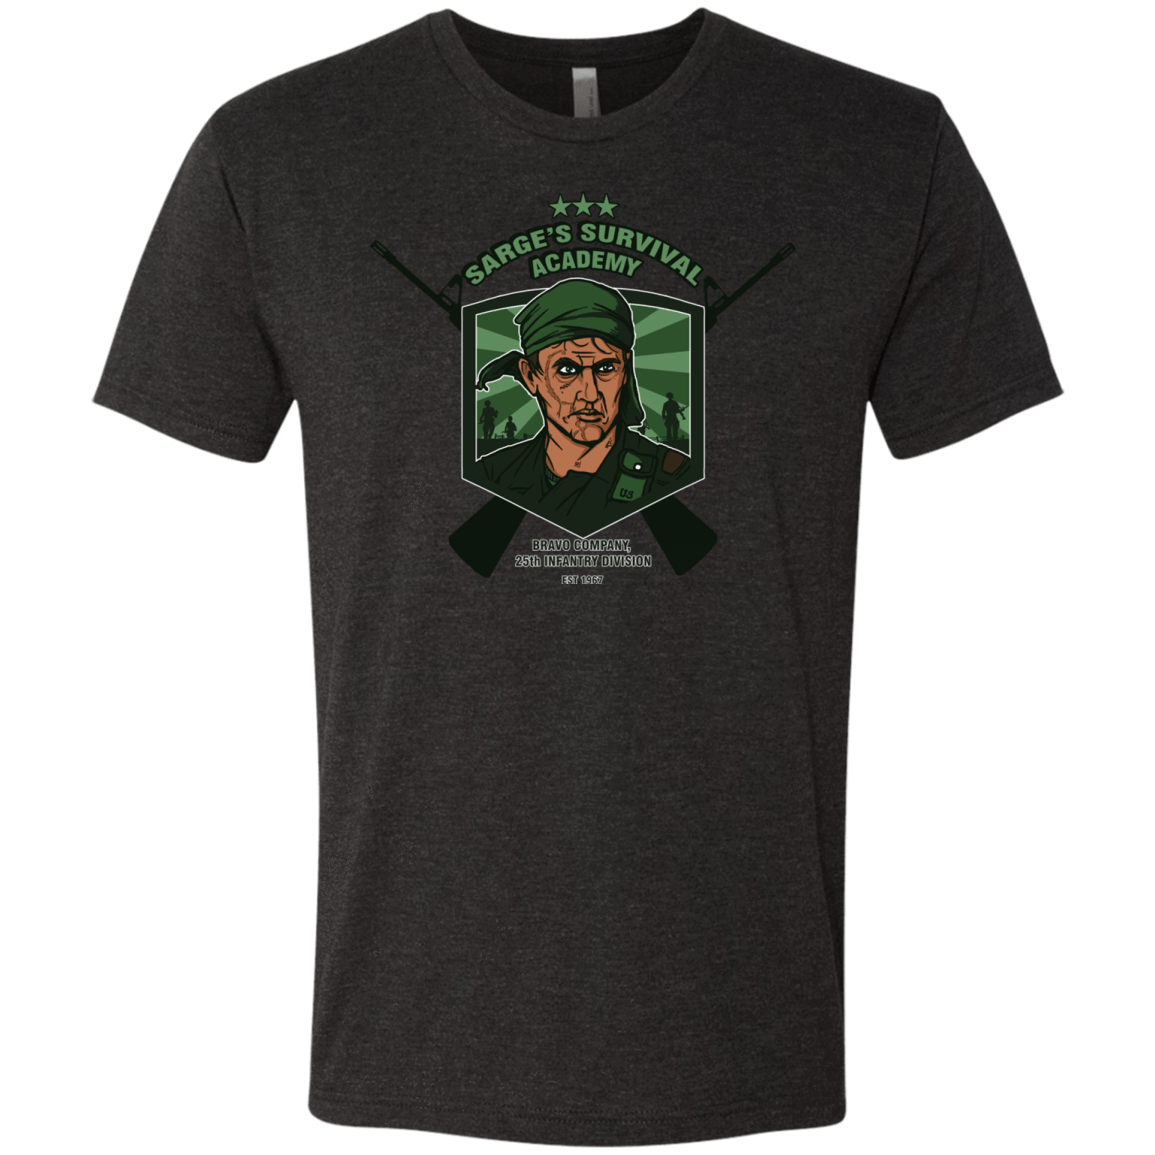 T-Shirts Vintage Black / S Sarges Survival Men's Triblend T-Shirt